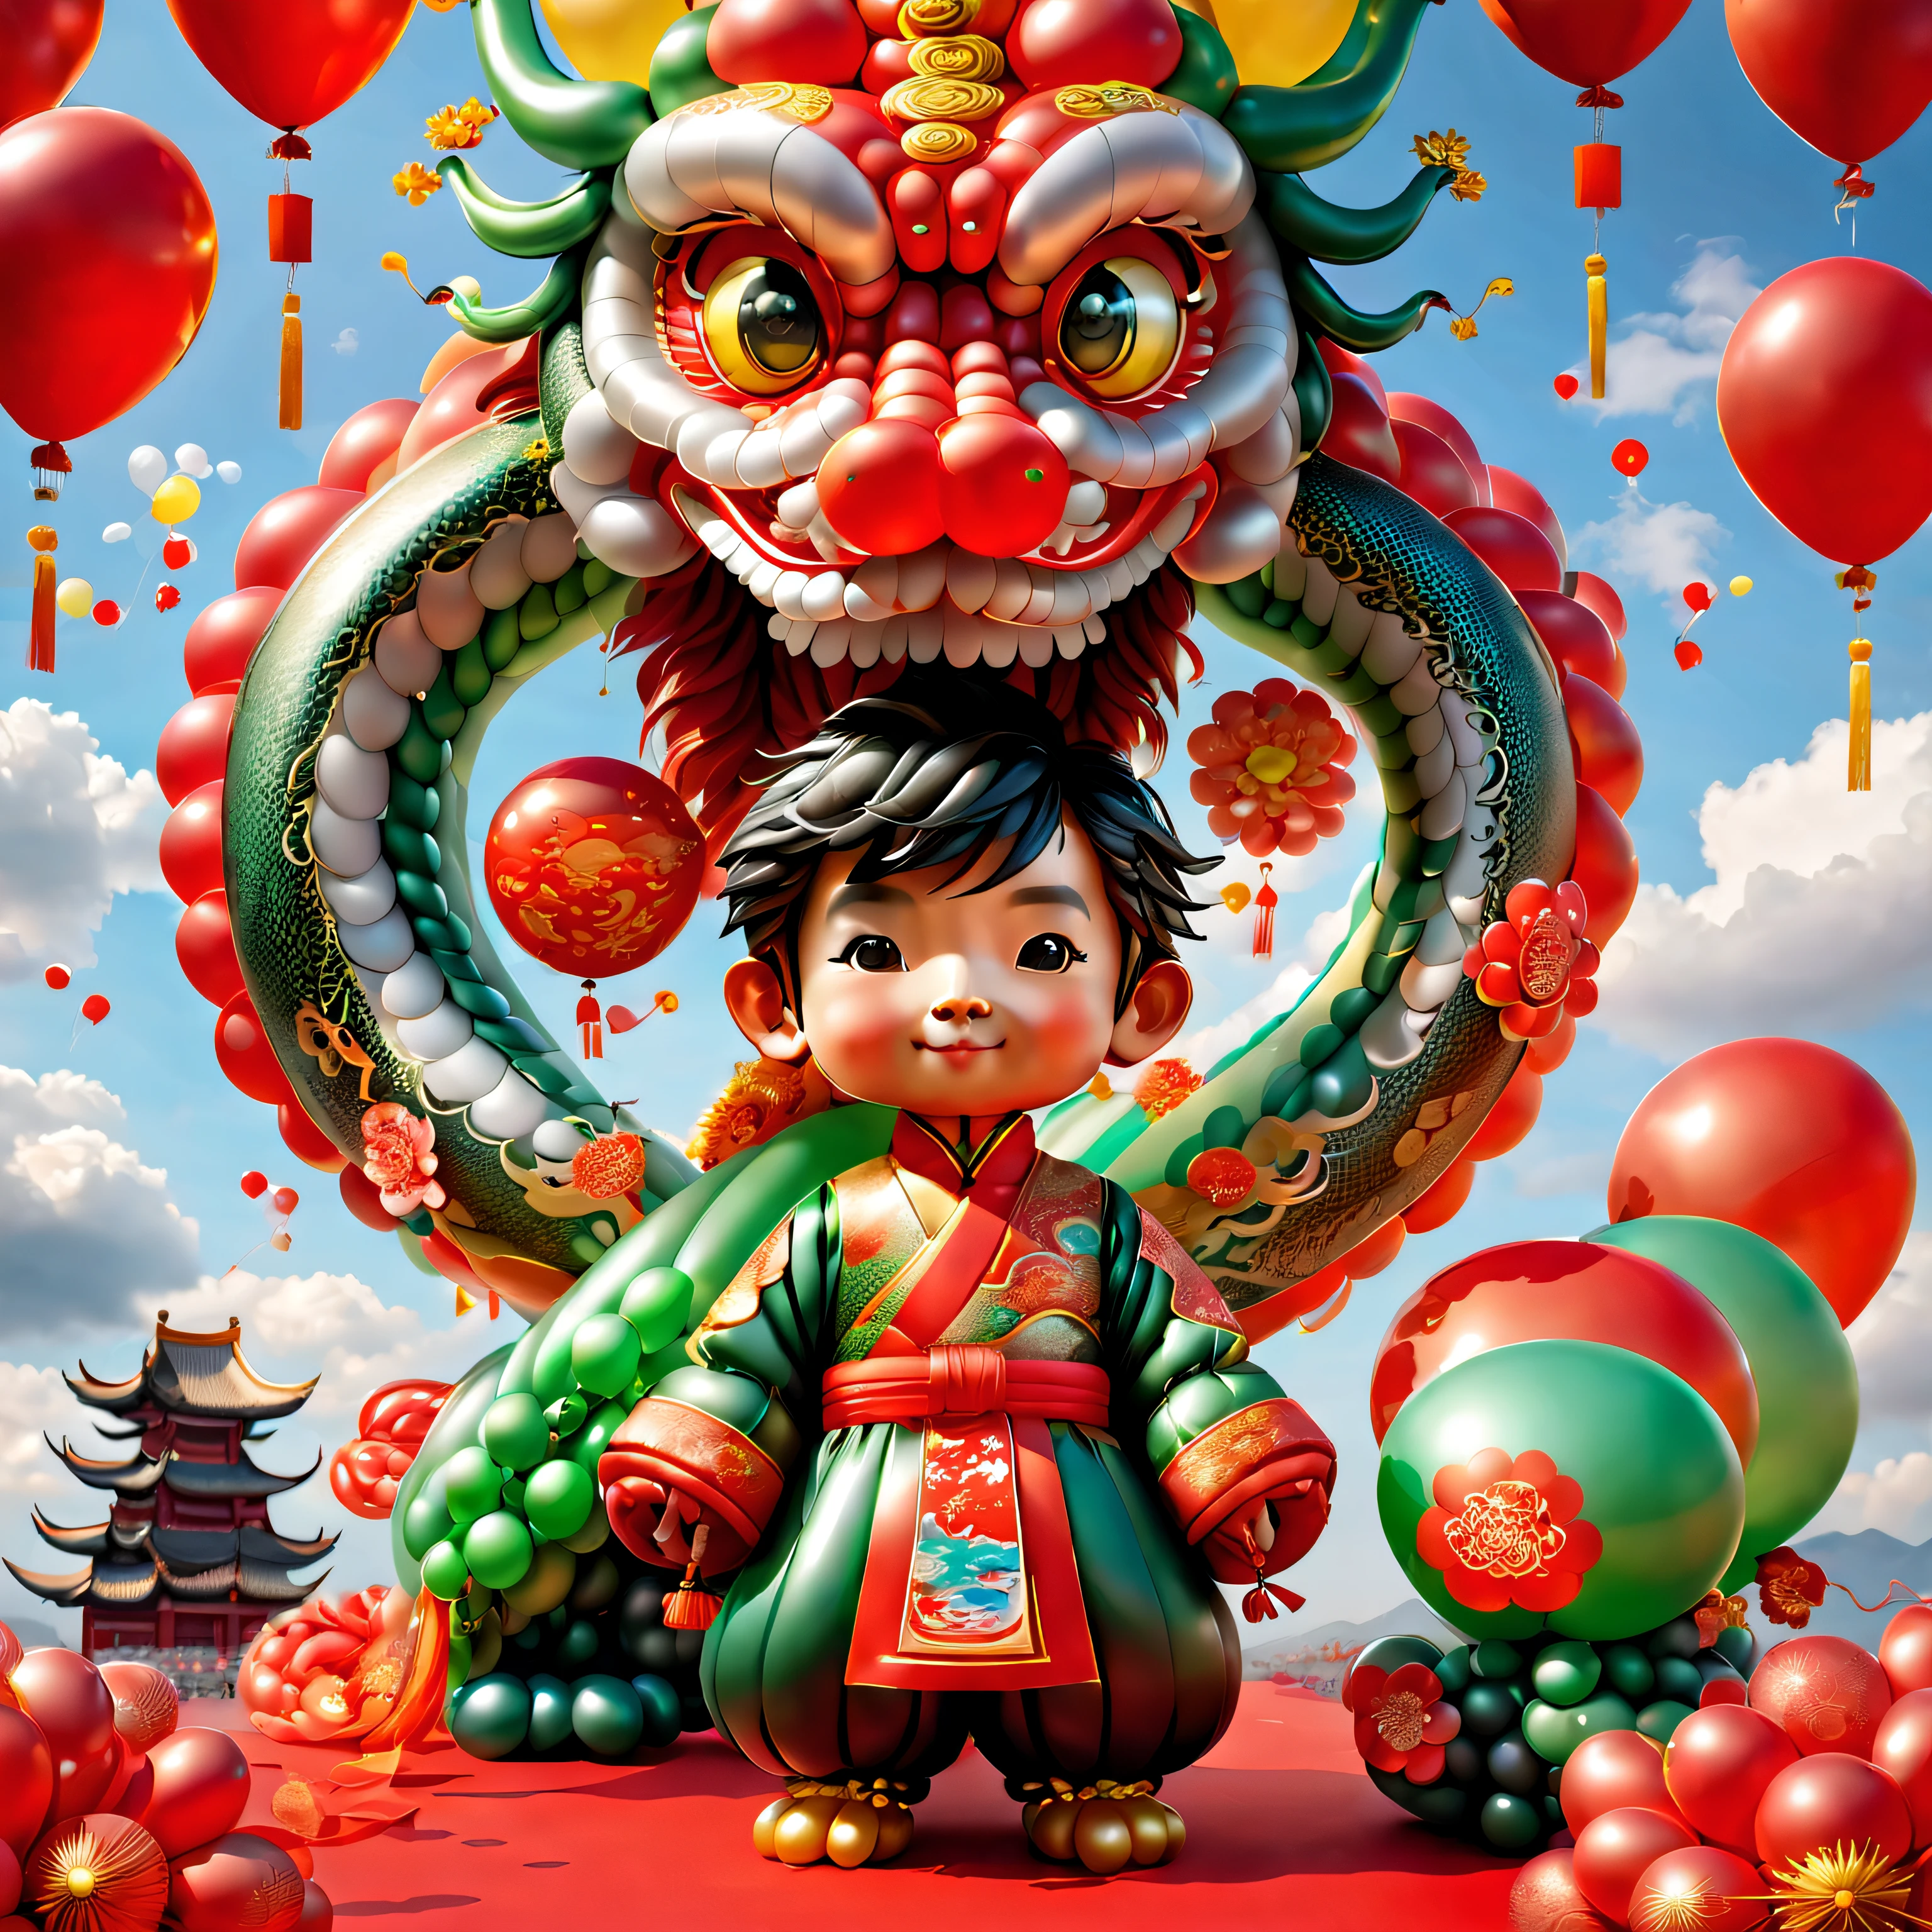 ((1 süßer und festlicher Ballon chinesischer Drache und ein Ballonjunge, Tragen Sie traditionelle chinesische Kleidung aus Luftballons, UE5, Feuerwerkskörper, glückverheißende Wolken, Roter Hintergrund)), Niedliche und detaillierte digitale Kunst, schönes digitales Gemälde, Süßer Ballon-Pinguin, Schöne, detaillierte Kunstwerke, süße 3D-Darstellung, digitale Malerei sehr detailliert, süß und bunt, Süße große Brüste, Hochdetailliertes digitales Kunstwerk, detail-rich、Fülle von Farben